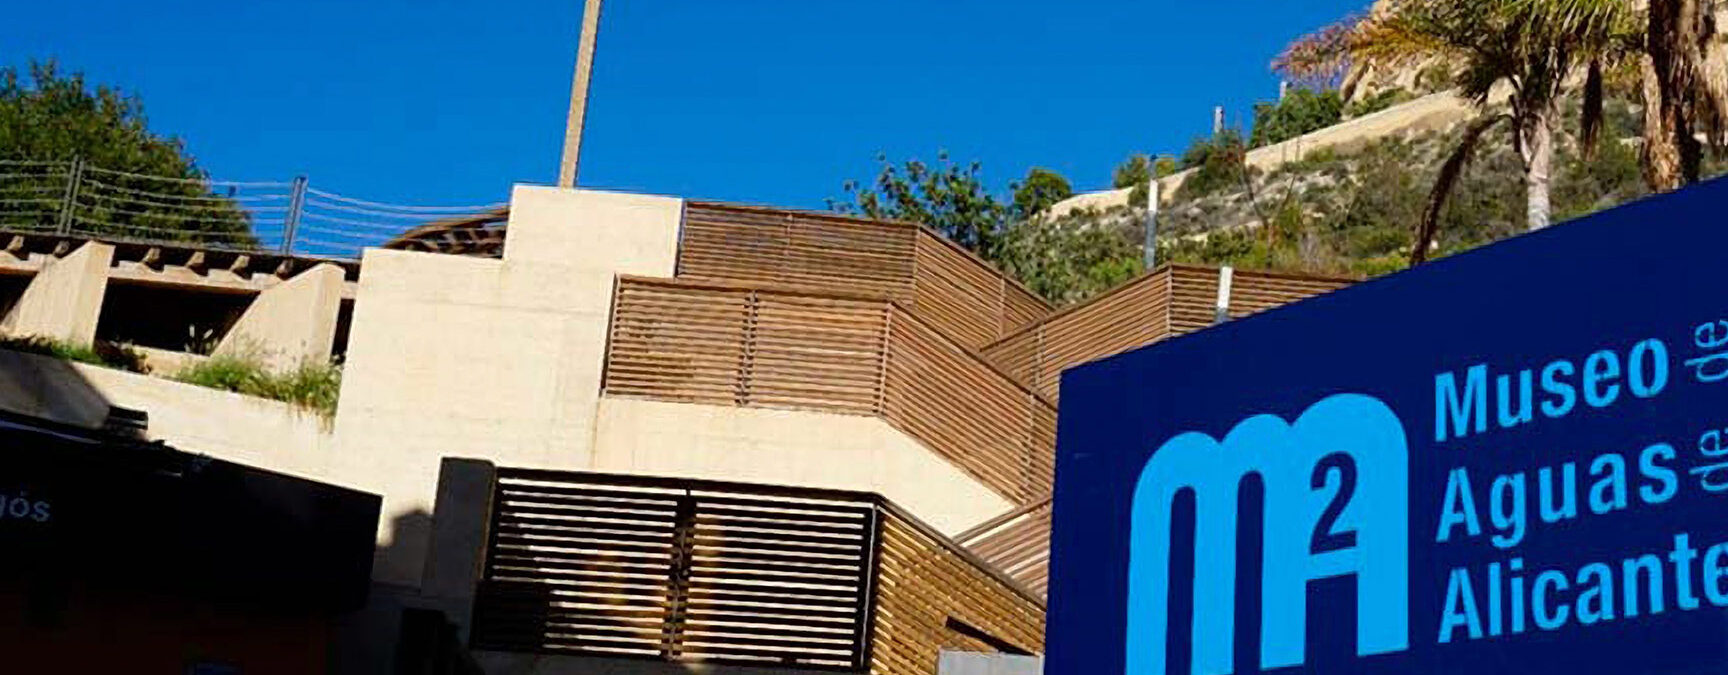 MUSEU NOVA TABARCA		Alicante/Alacant	Alacant/Alicante	Museo